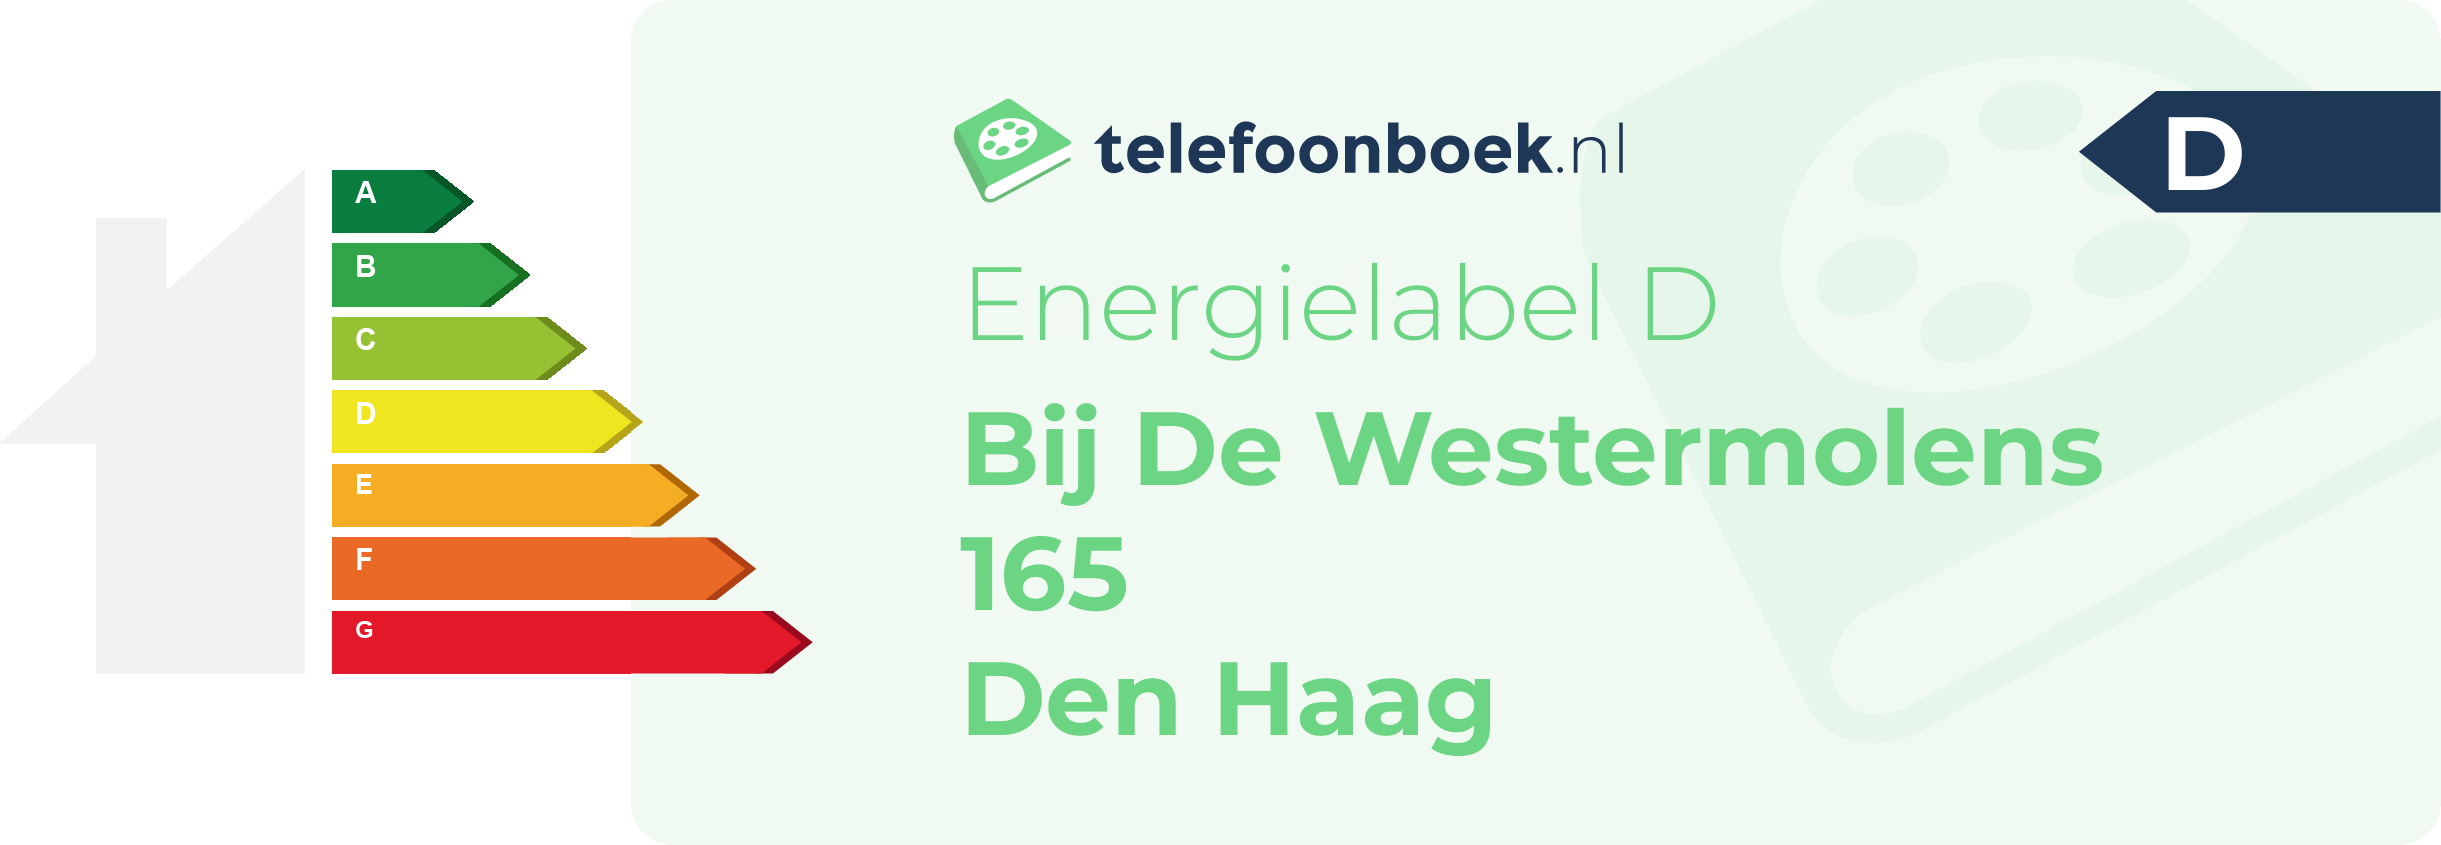 Energielabel Bij De Westermolens 165 Den Haag